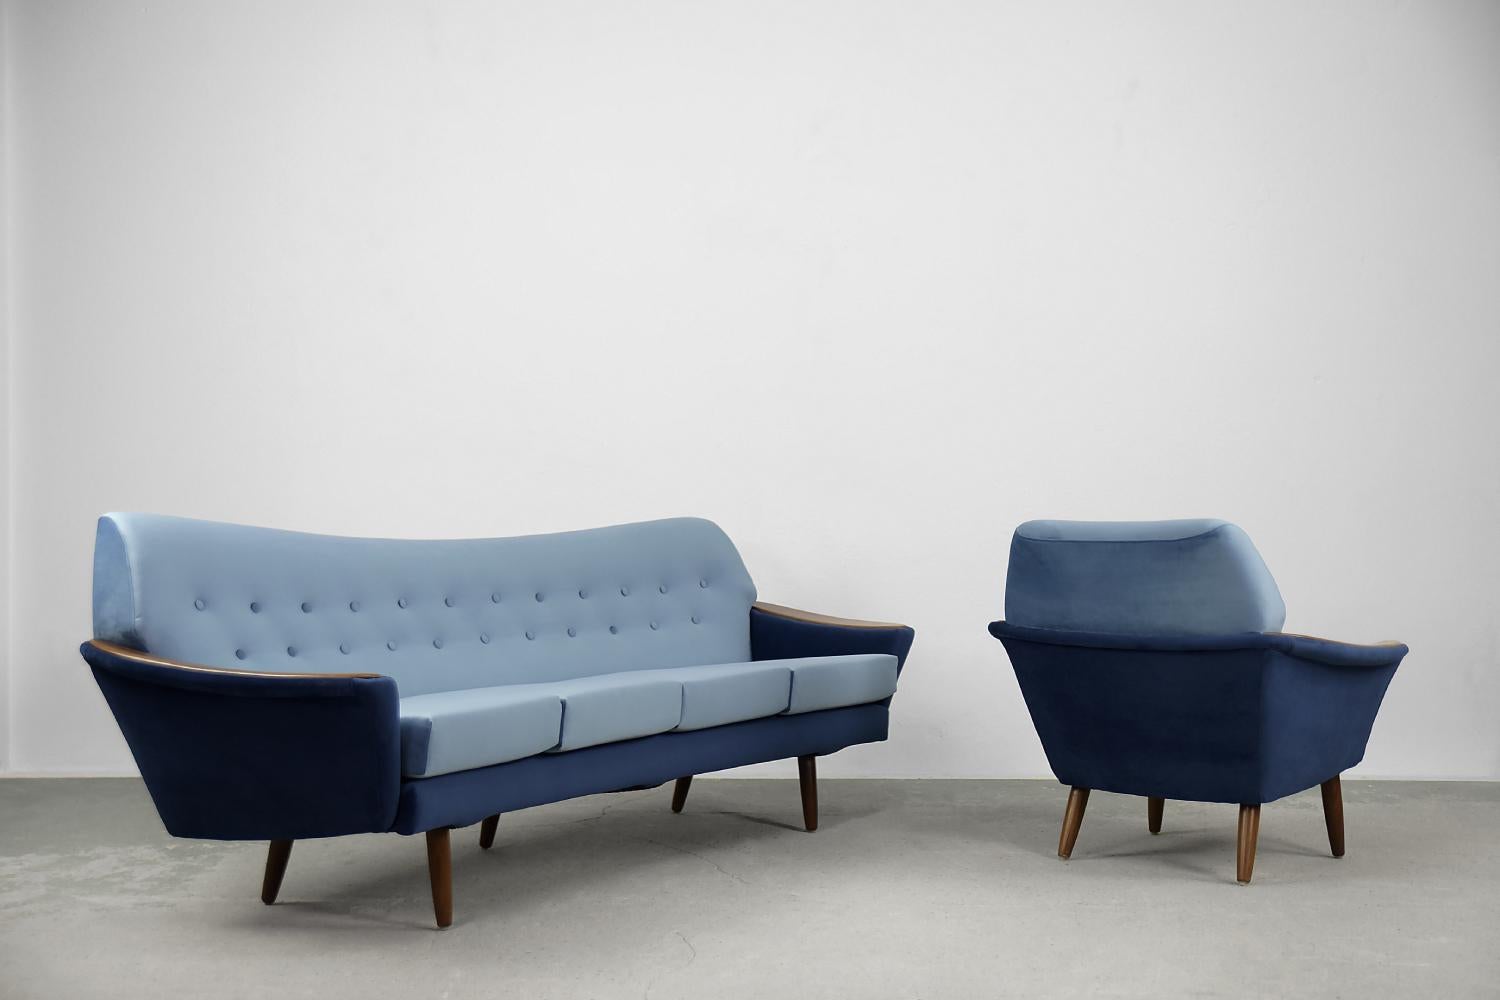 Dieses seltene modernistische Loungeset wurde von dem schwedischen Hersteller Holm Fabriker AB in den frühen 1960er Jahren hergestellt. Es besteht aus einem viersitzigen Sofa und einem Sessel. Es wurde mit dem hochwertigsten MATERIAL in königsblauen